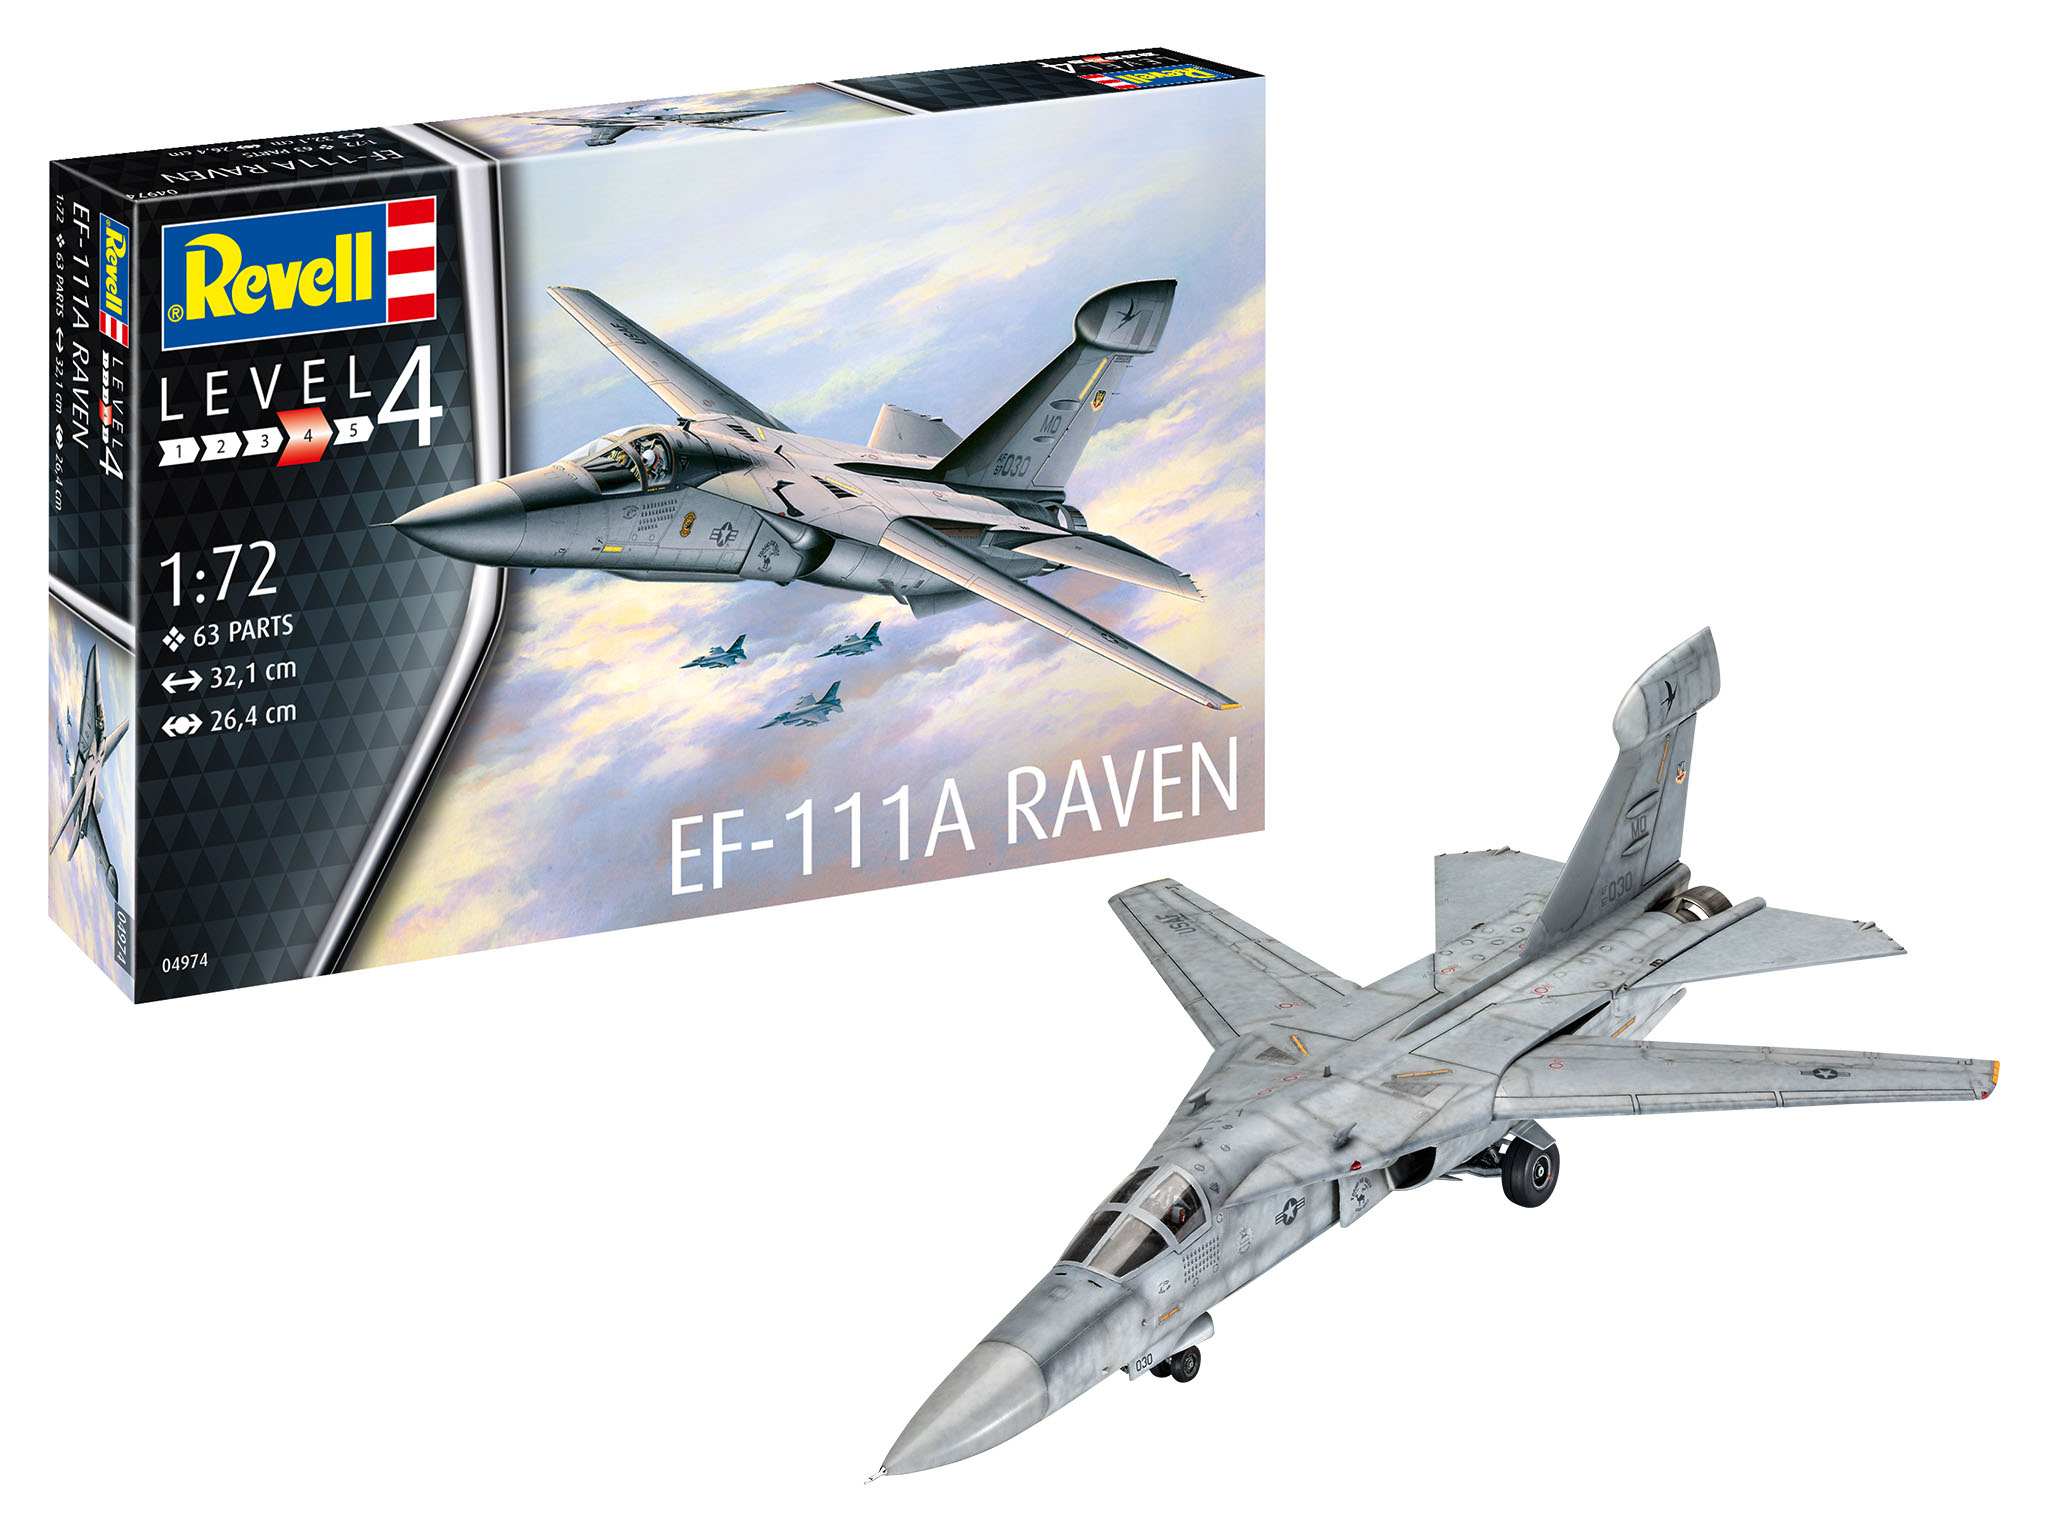 EF-111A Raven - 04974